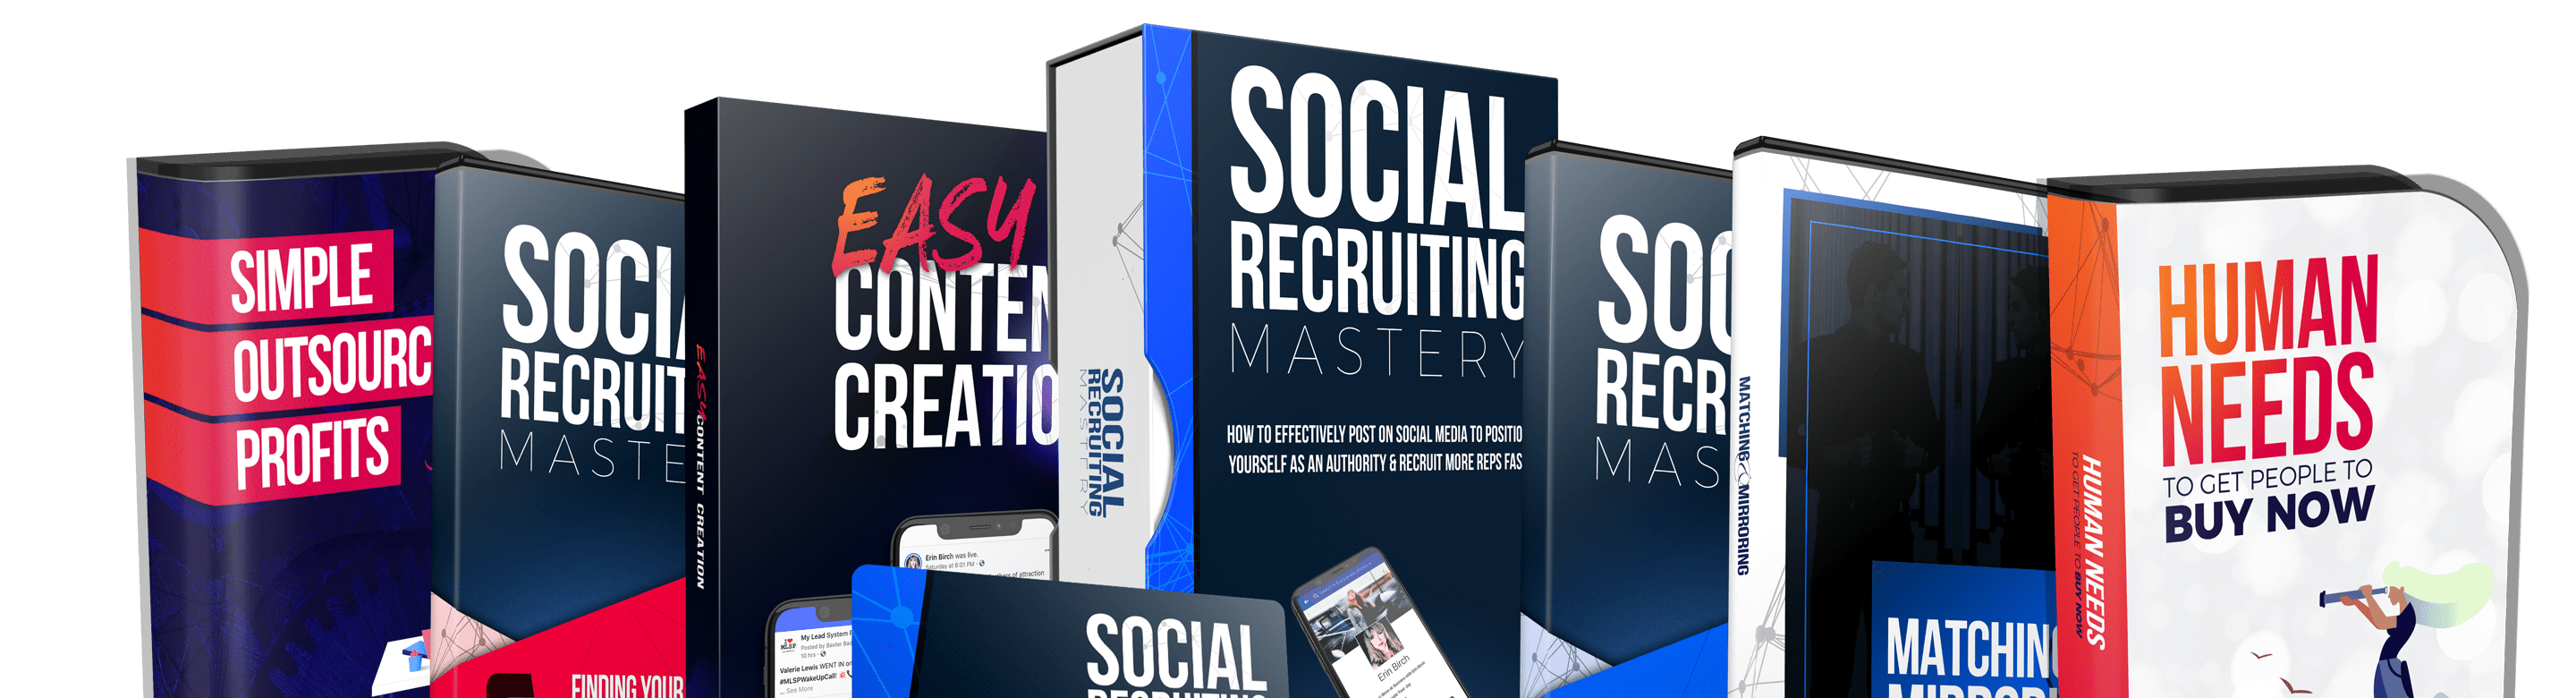 Social Recruiting Mastery